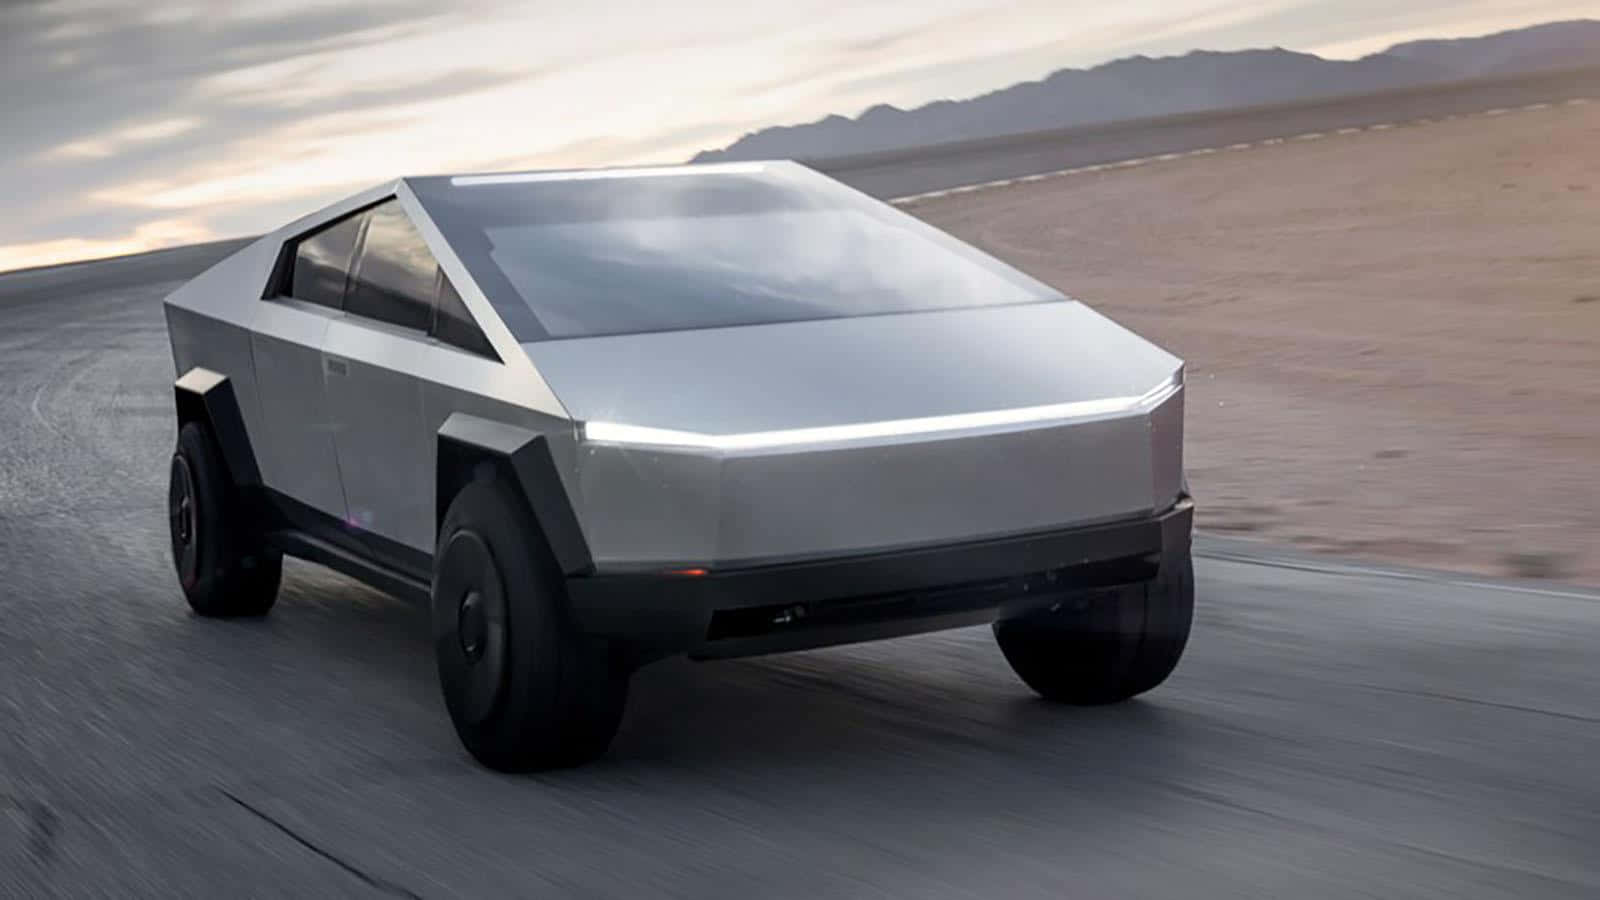 Teslacybertruck, Det Senaste Inom Futuristisk Bil Design Med Elektrisk Drivkraft. Wallpaper